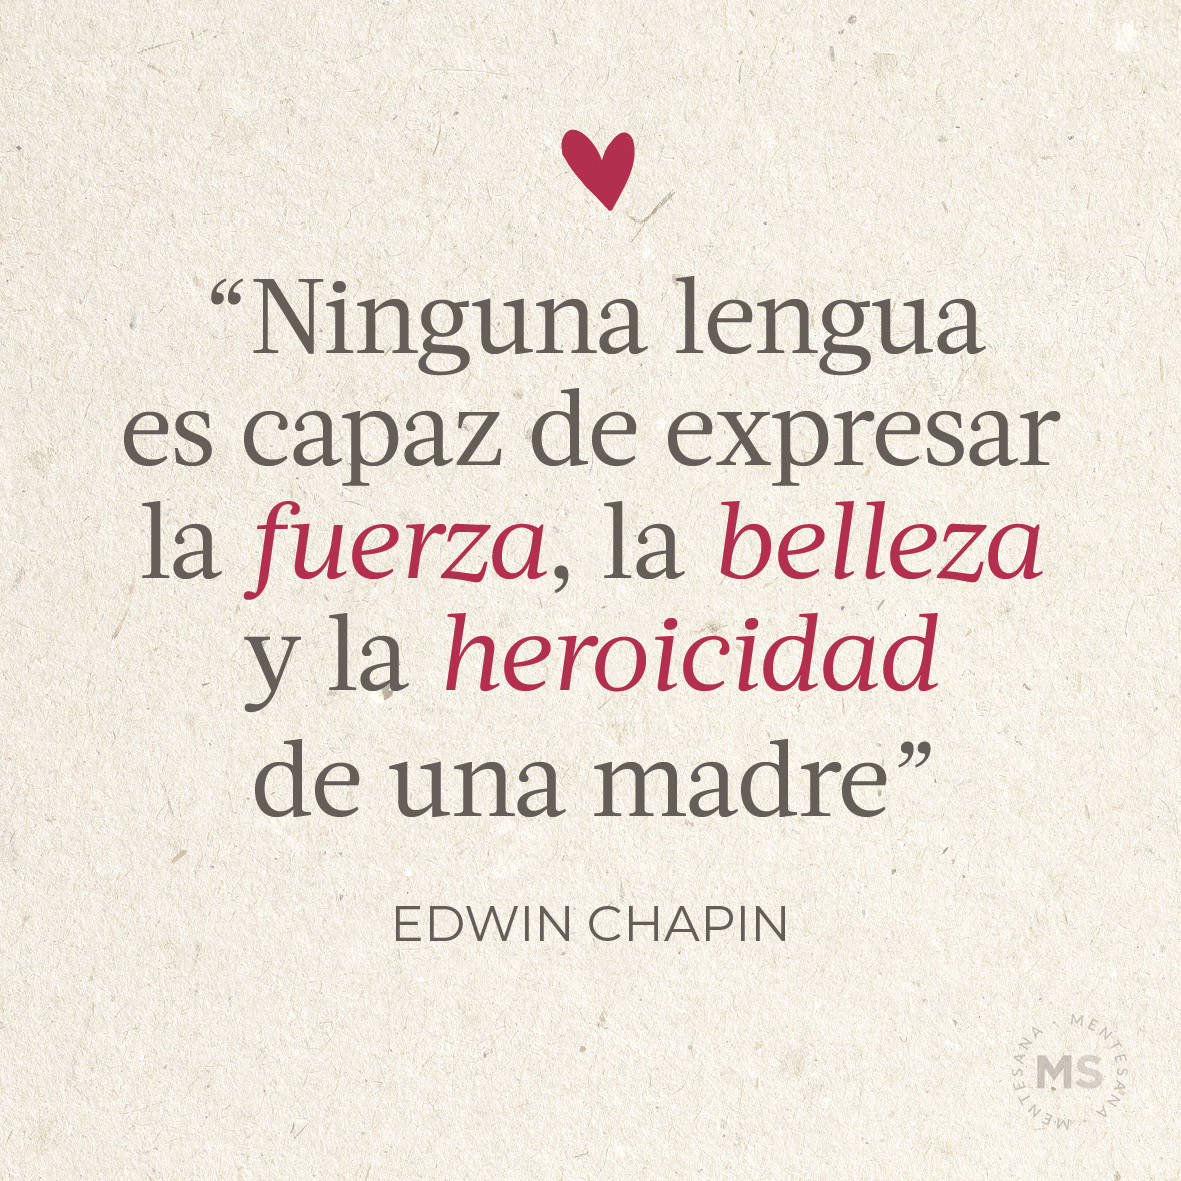 “Ninguna lengua es capaz de expresar la fuerza, la belleza y la heroicidad de una madre.” Edwin Chapin